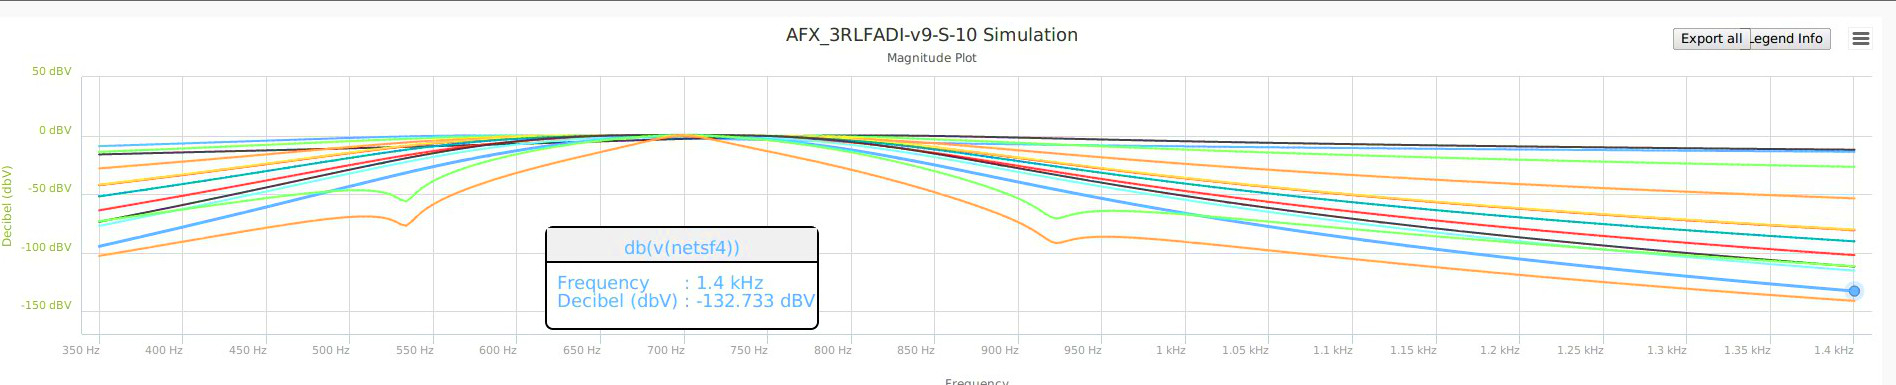 AFX_3RLFADI-v9-M-10-160715-1845-F4-1400.jpg